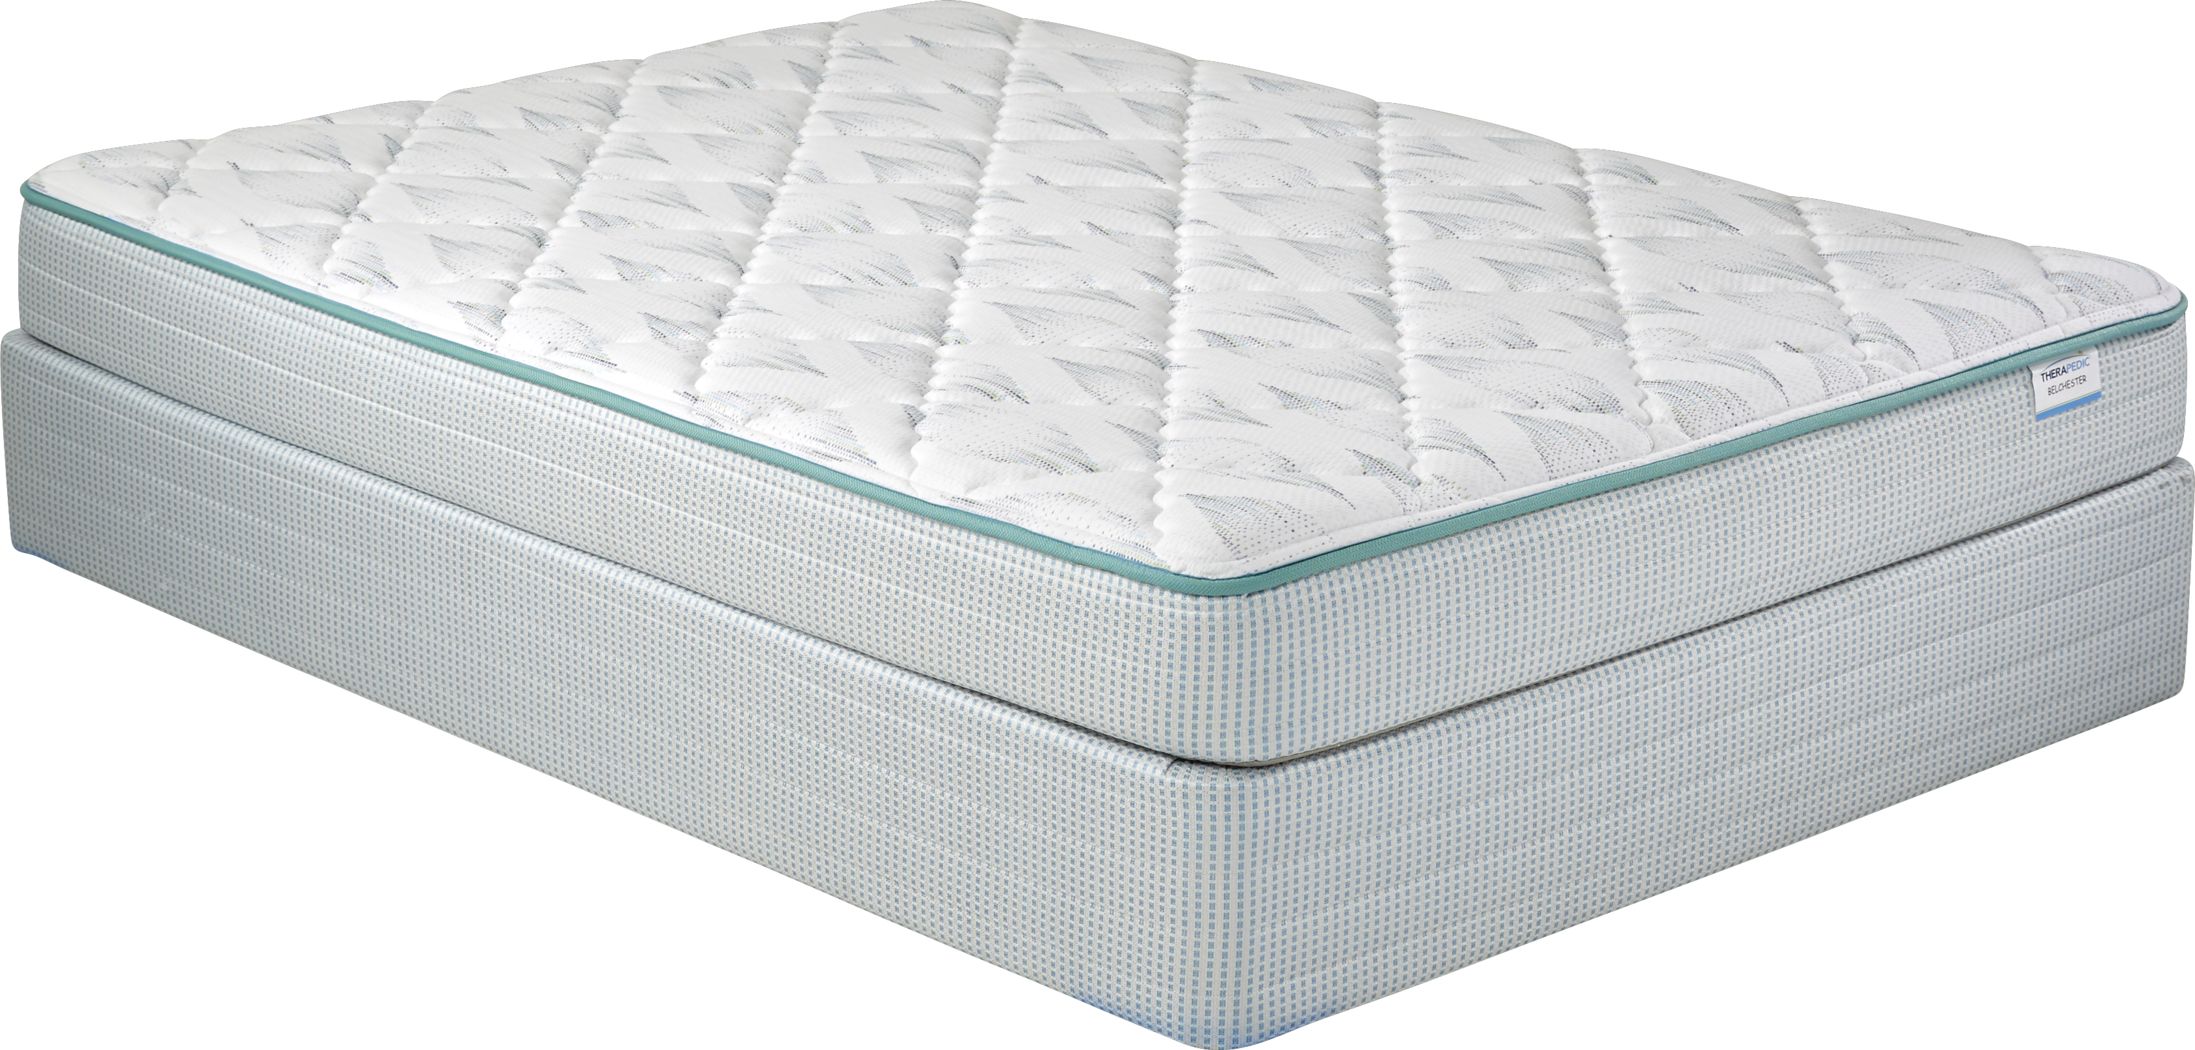 therapedic full mattress set